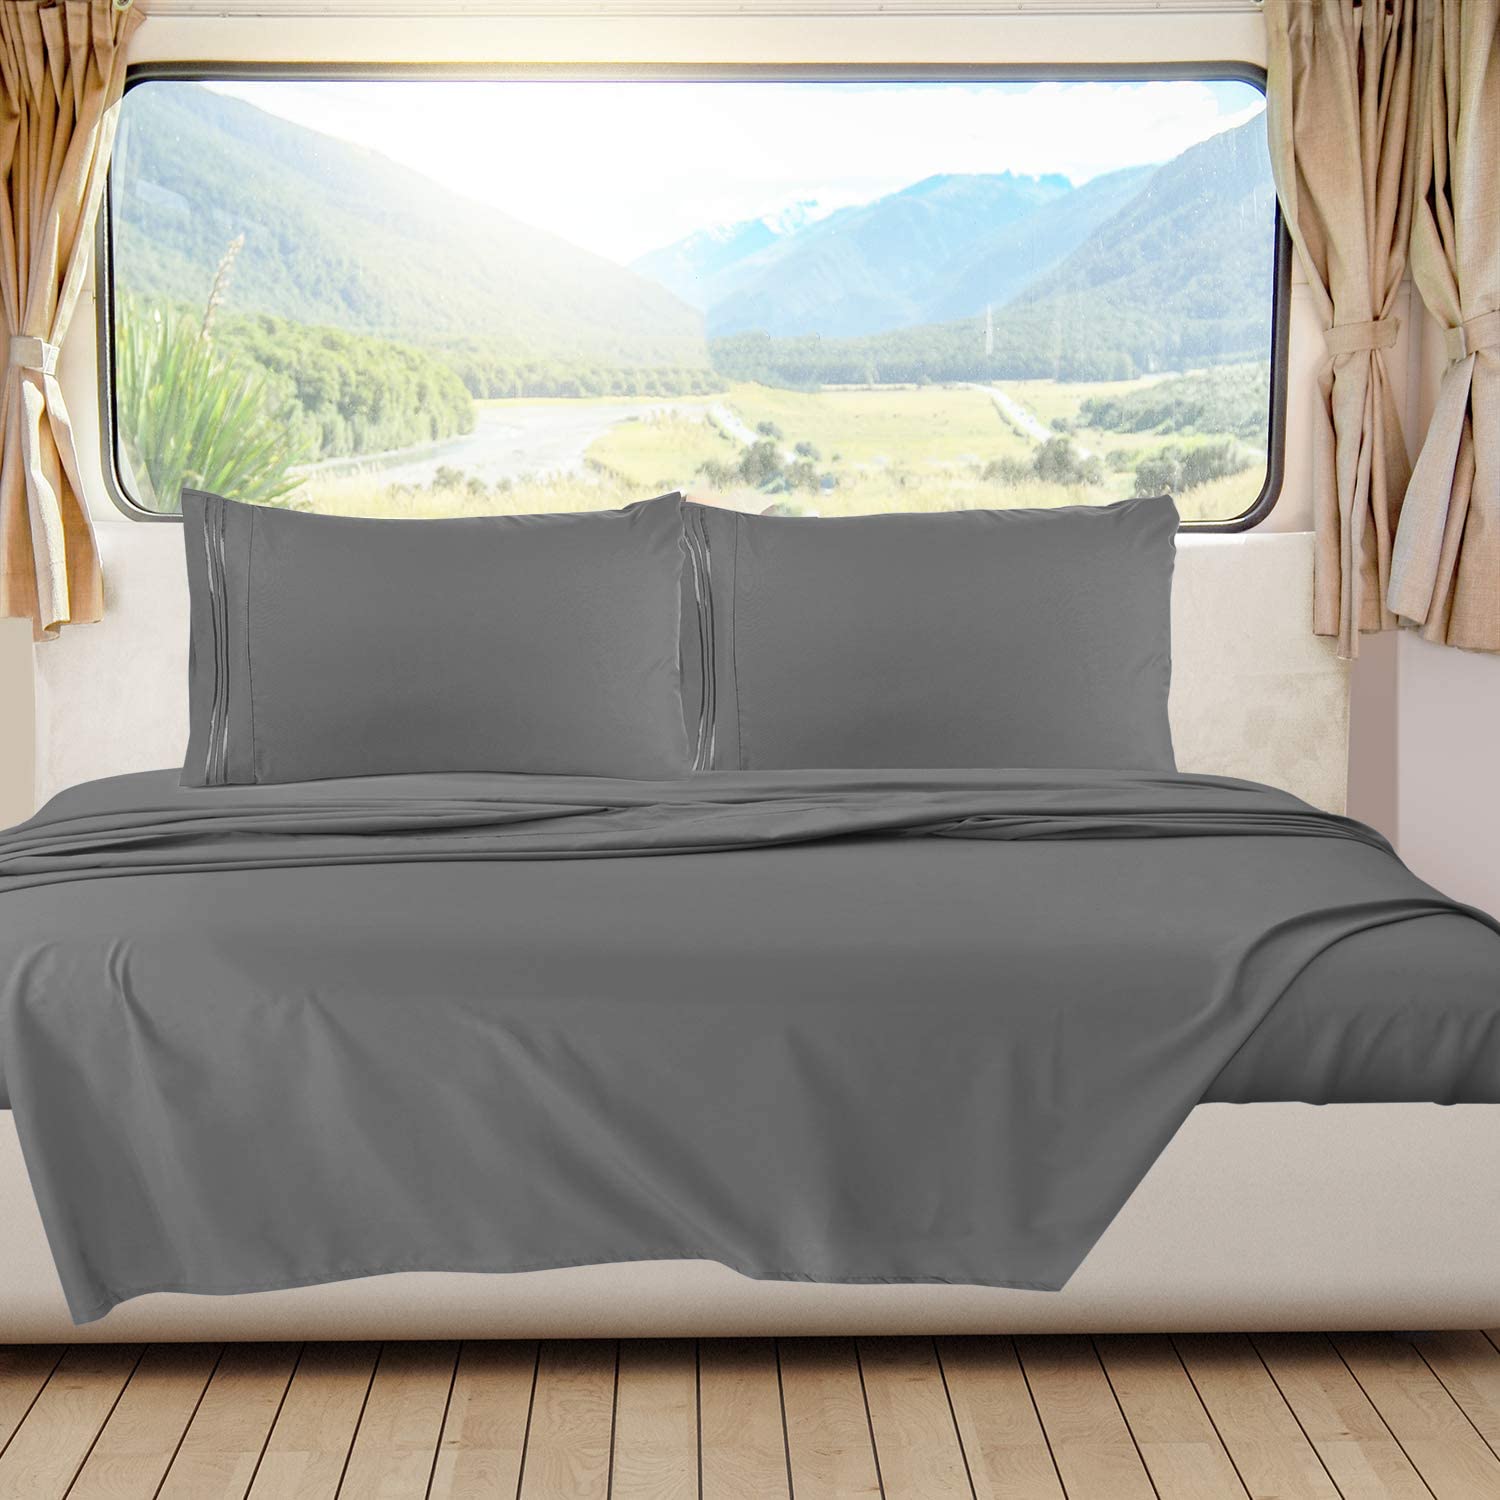 Nestl Bedding RV Sheets Set for Campers